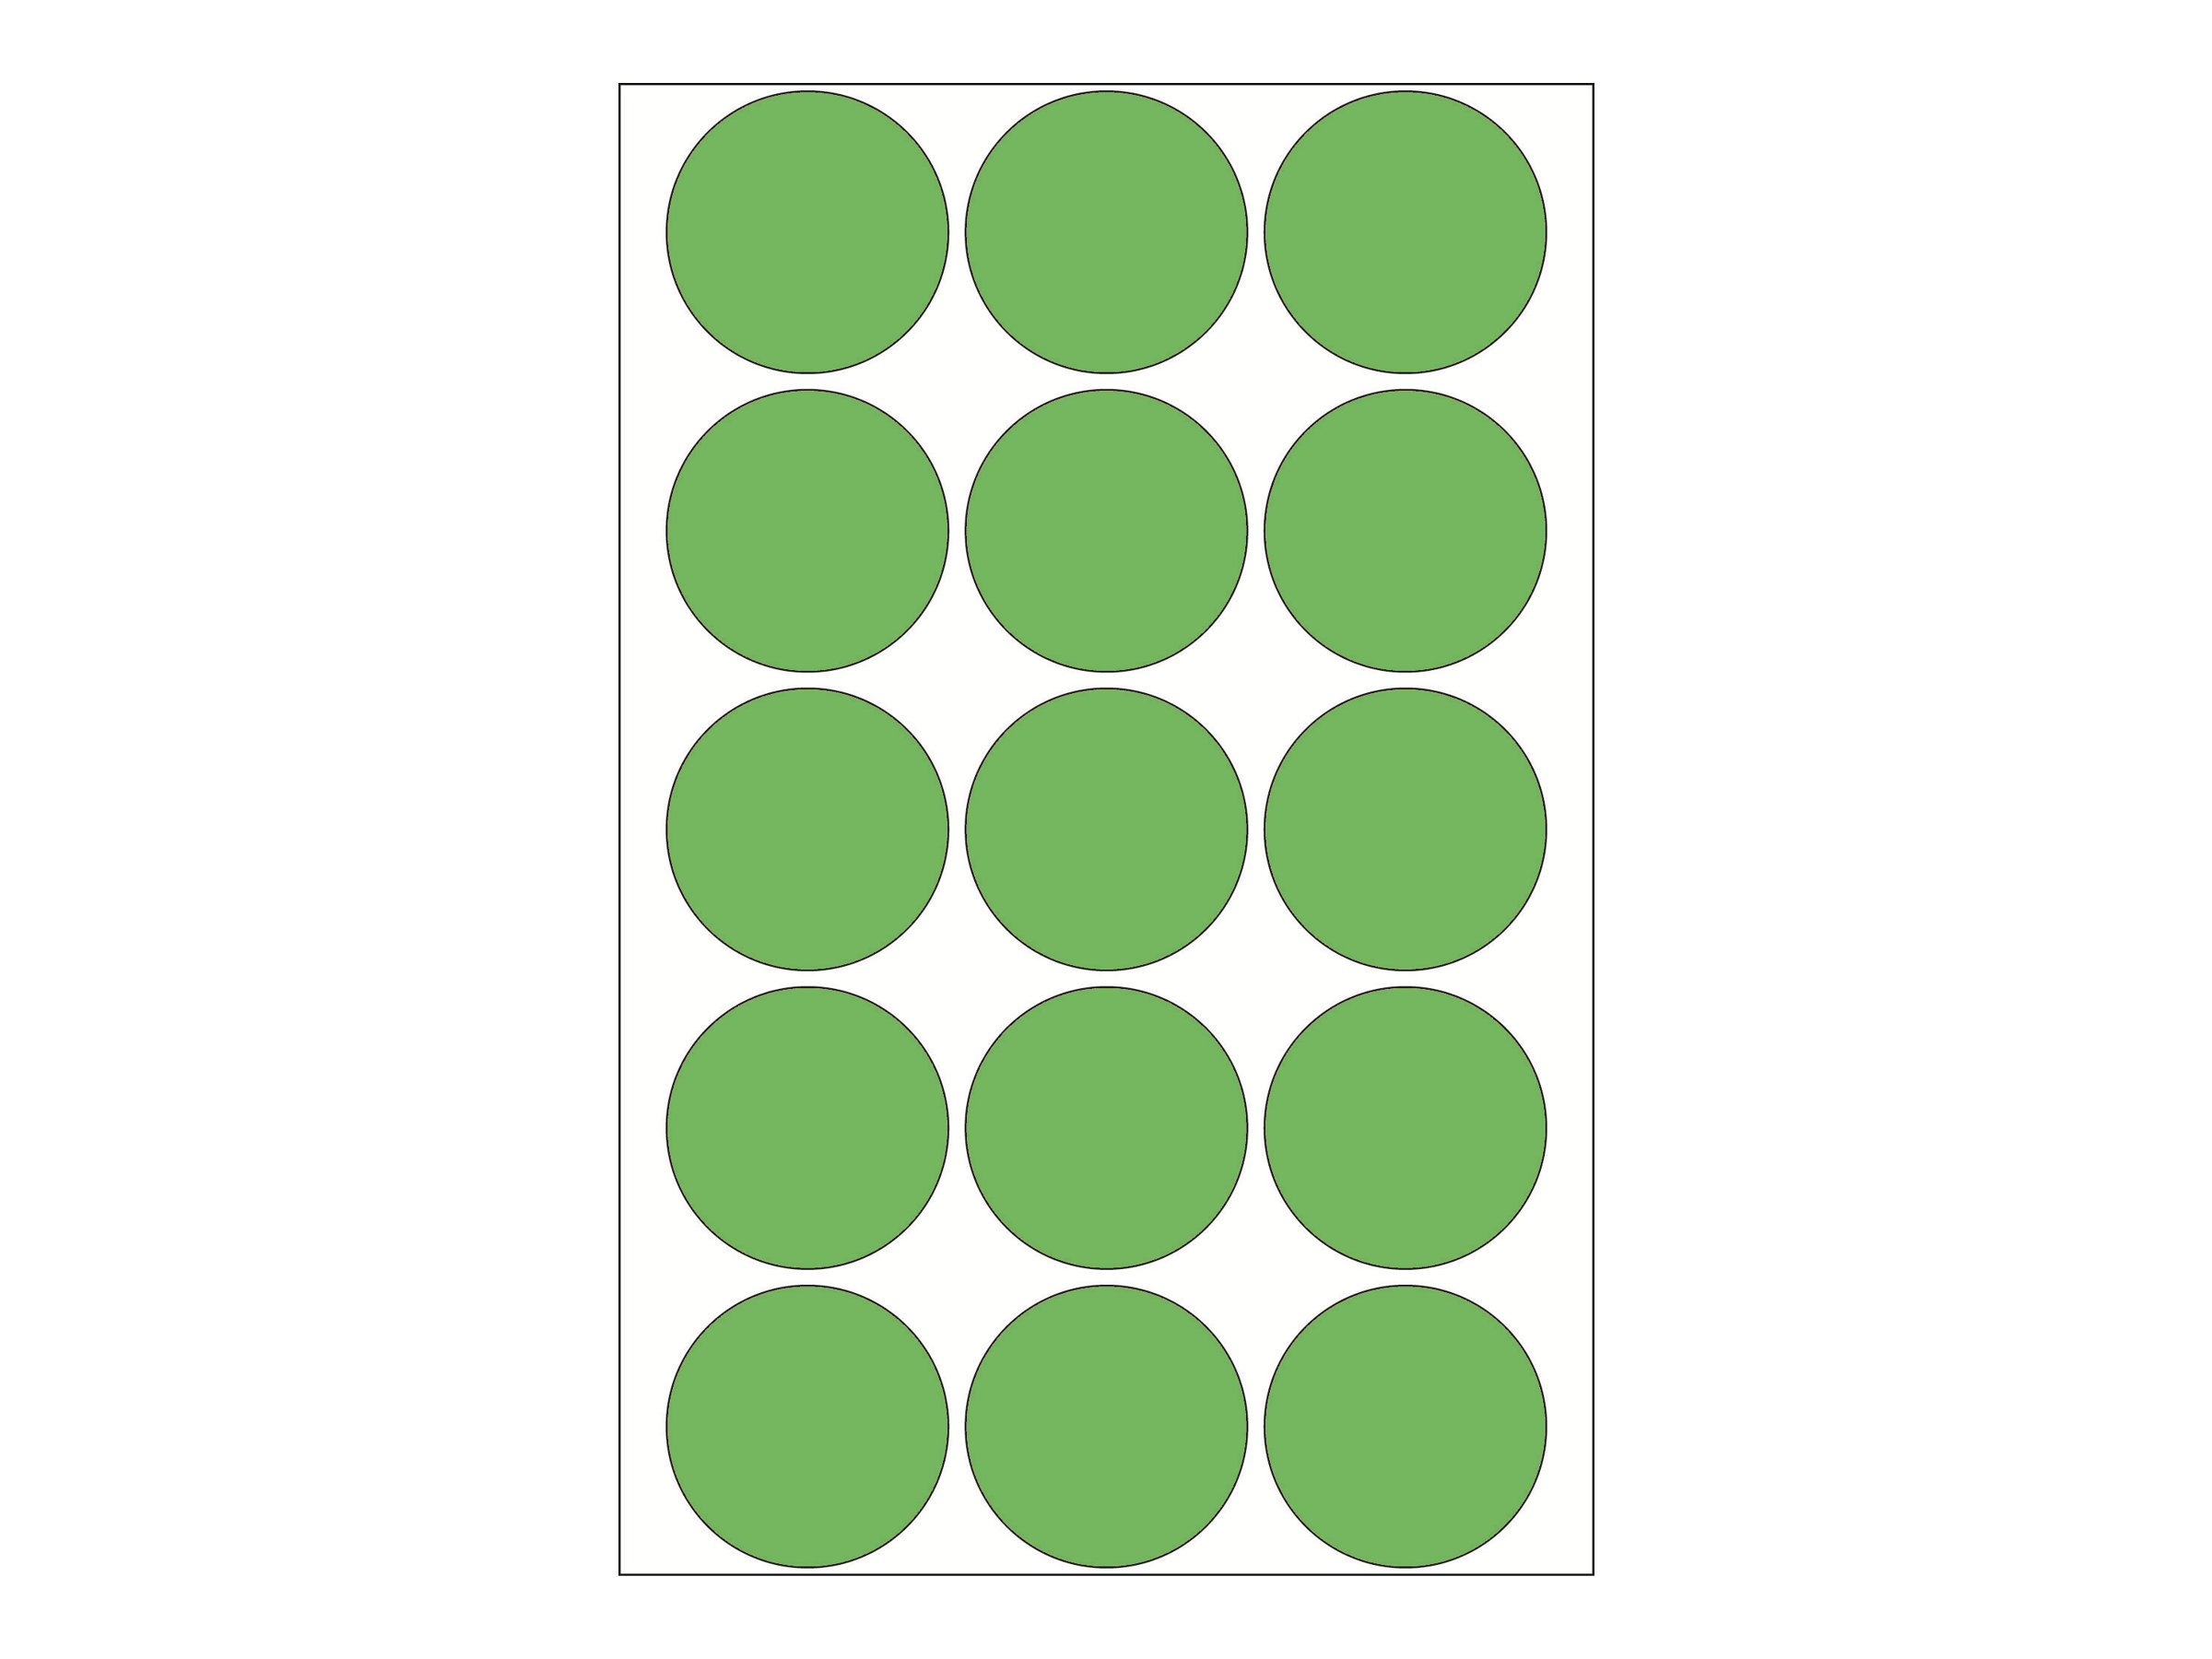 HERMA Papier - permanent selbstklebend - grün - 32 mm rund 480 Etikett(en) (32 Bogen x 15)